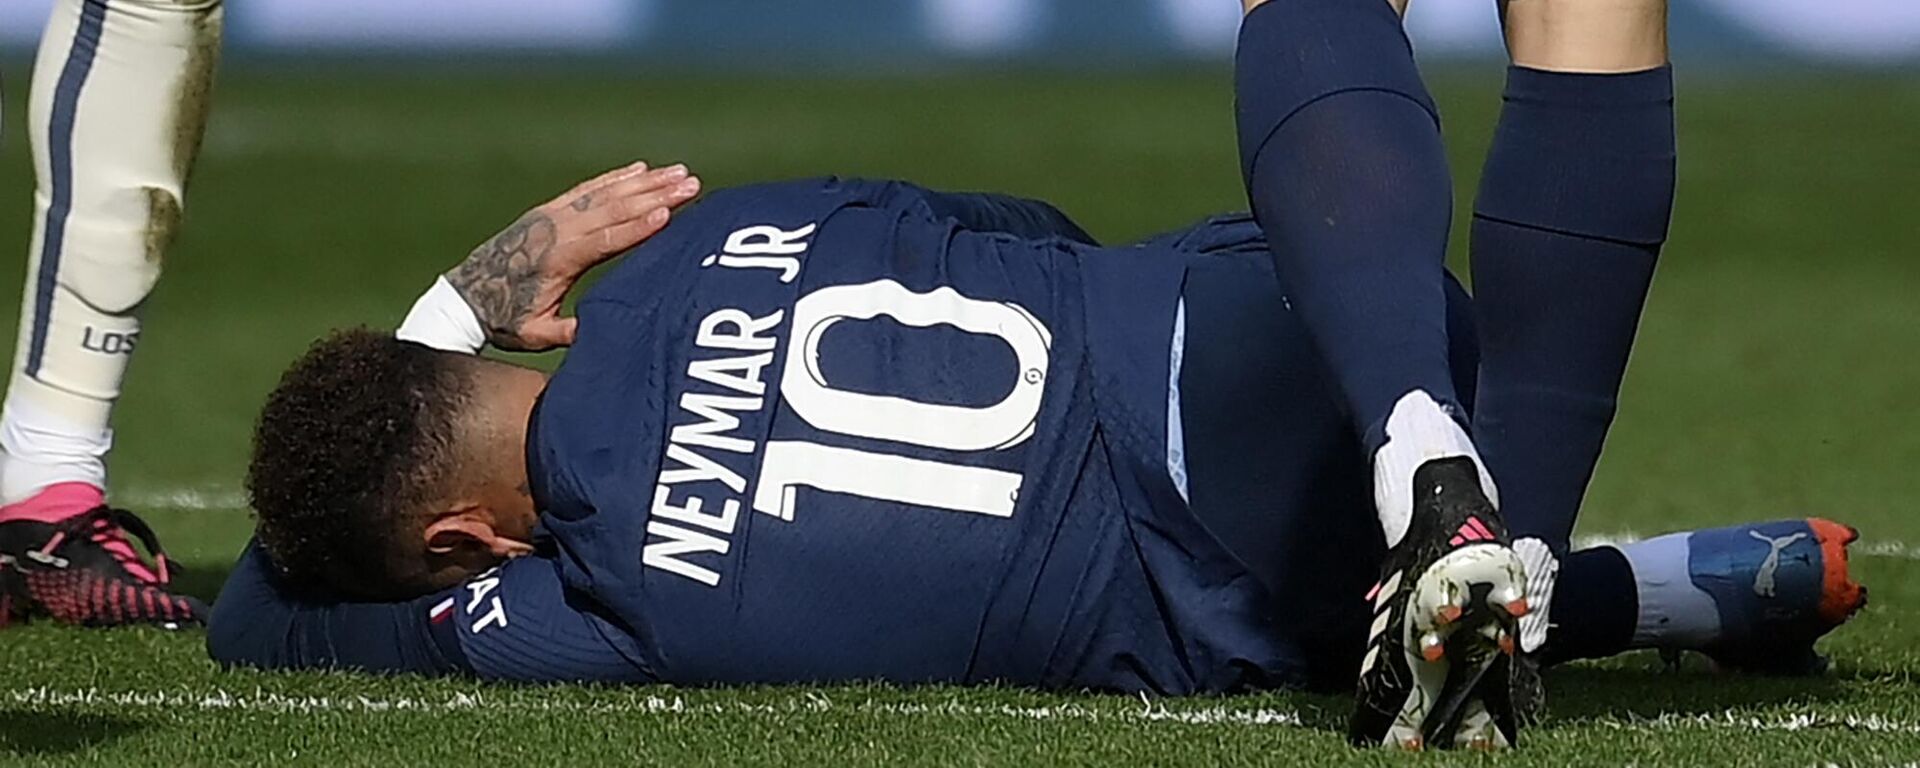 Fransa 1. Futbol Ligi (Ligue 1) ekiplerinden Paris Saint-Germain'in (PSG) Brezilyalı yıldızı Neymar, sakatlığı nedeniyle uzun süre forma giyemeyecek. - Sputnik Türkiye, 1920, 07.03.2023